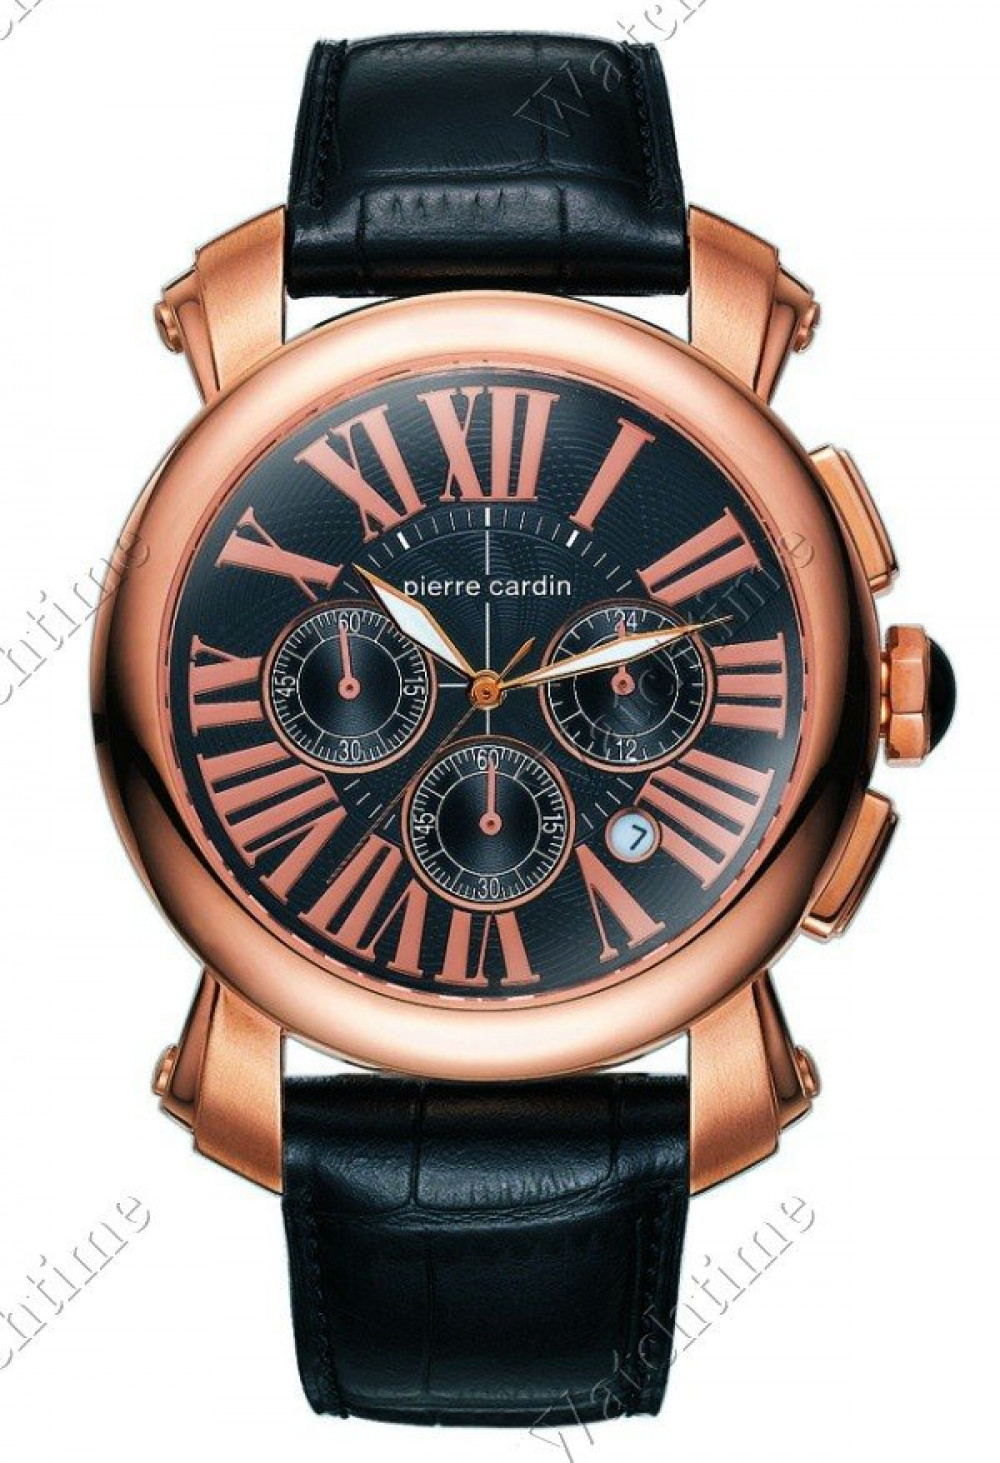 Zegarek firmy Pierre Cardin, model Monaco Chrono